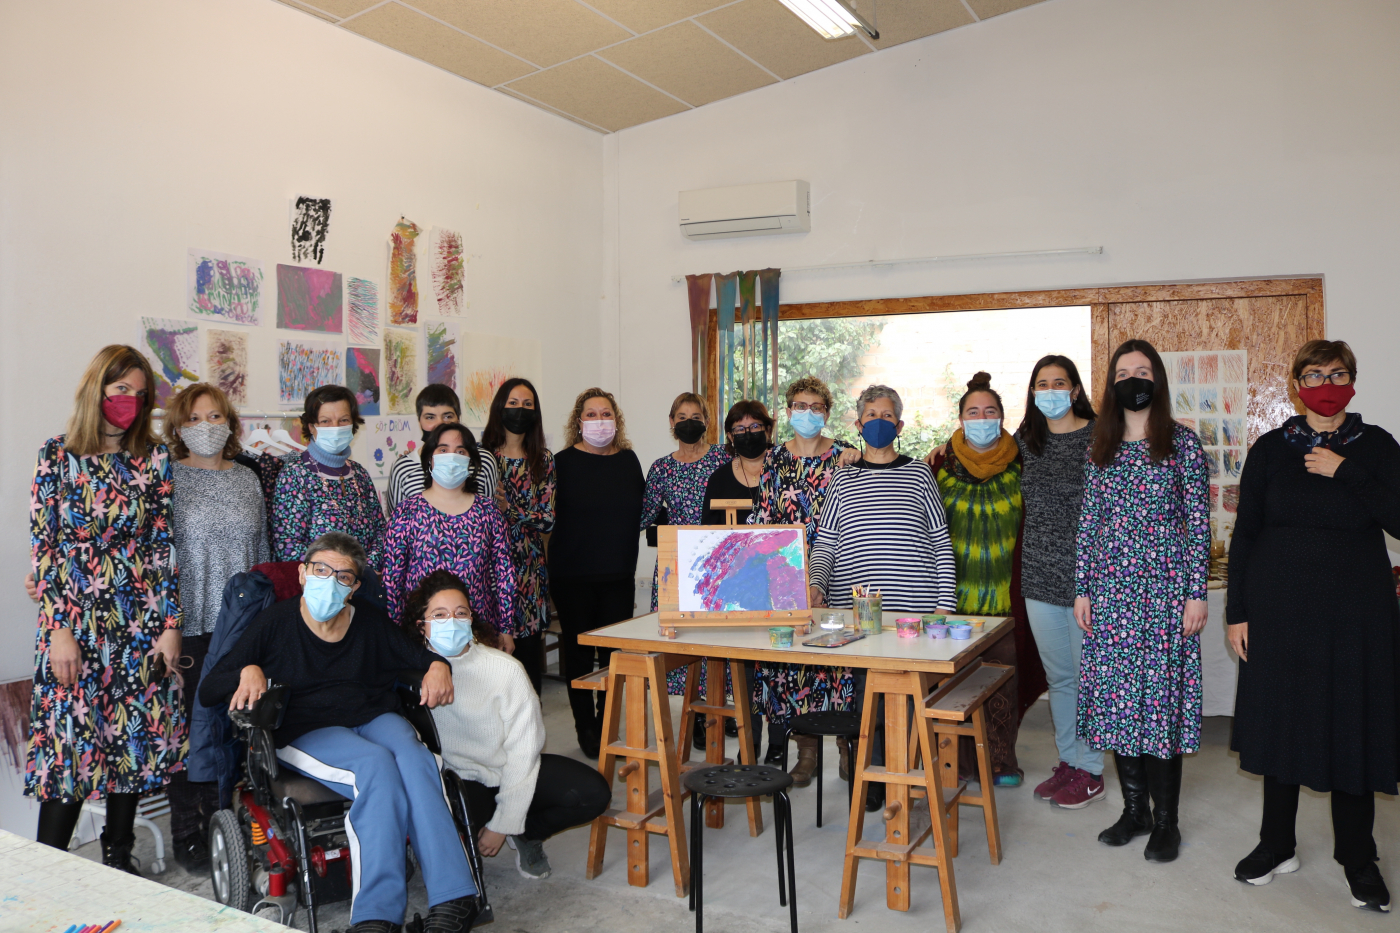 El Centro de Arte Singular de Guissona gestionado por el Grup Alba reúne a diferentes mujeres artistas para reivindicar su visibilización en el mundo del arte